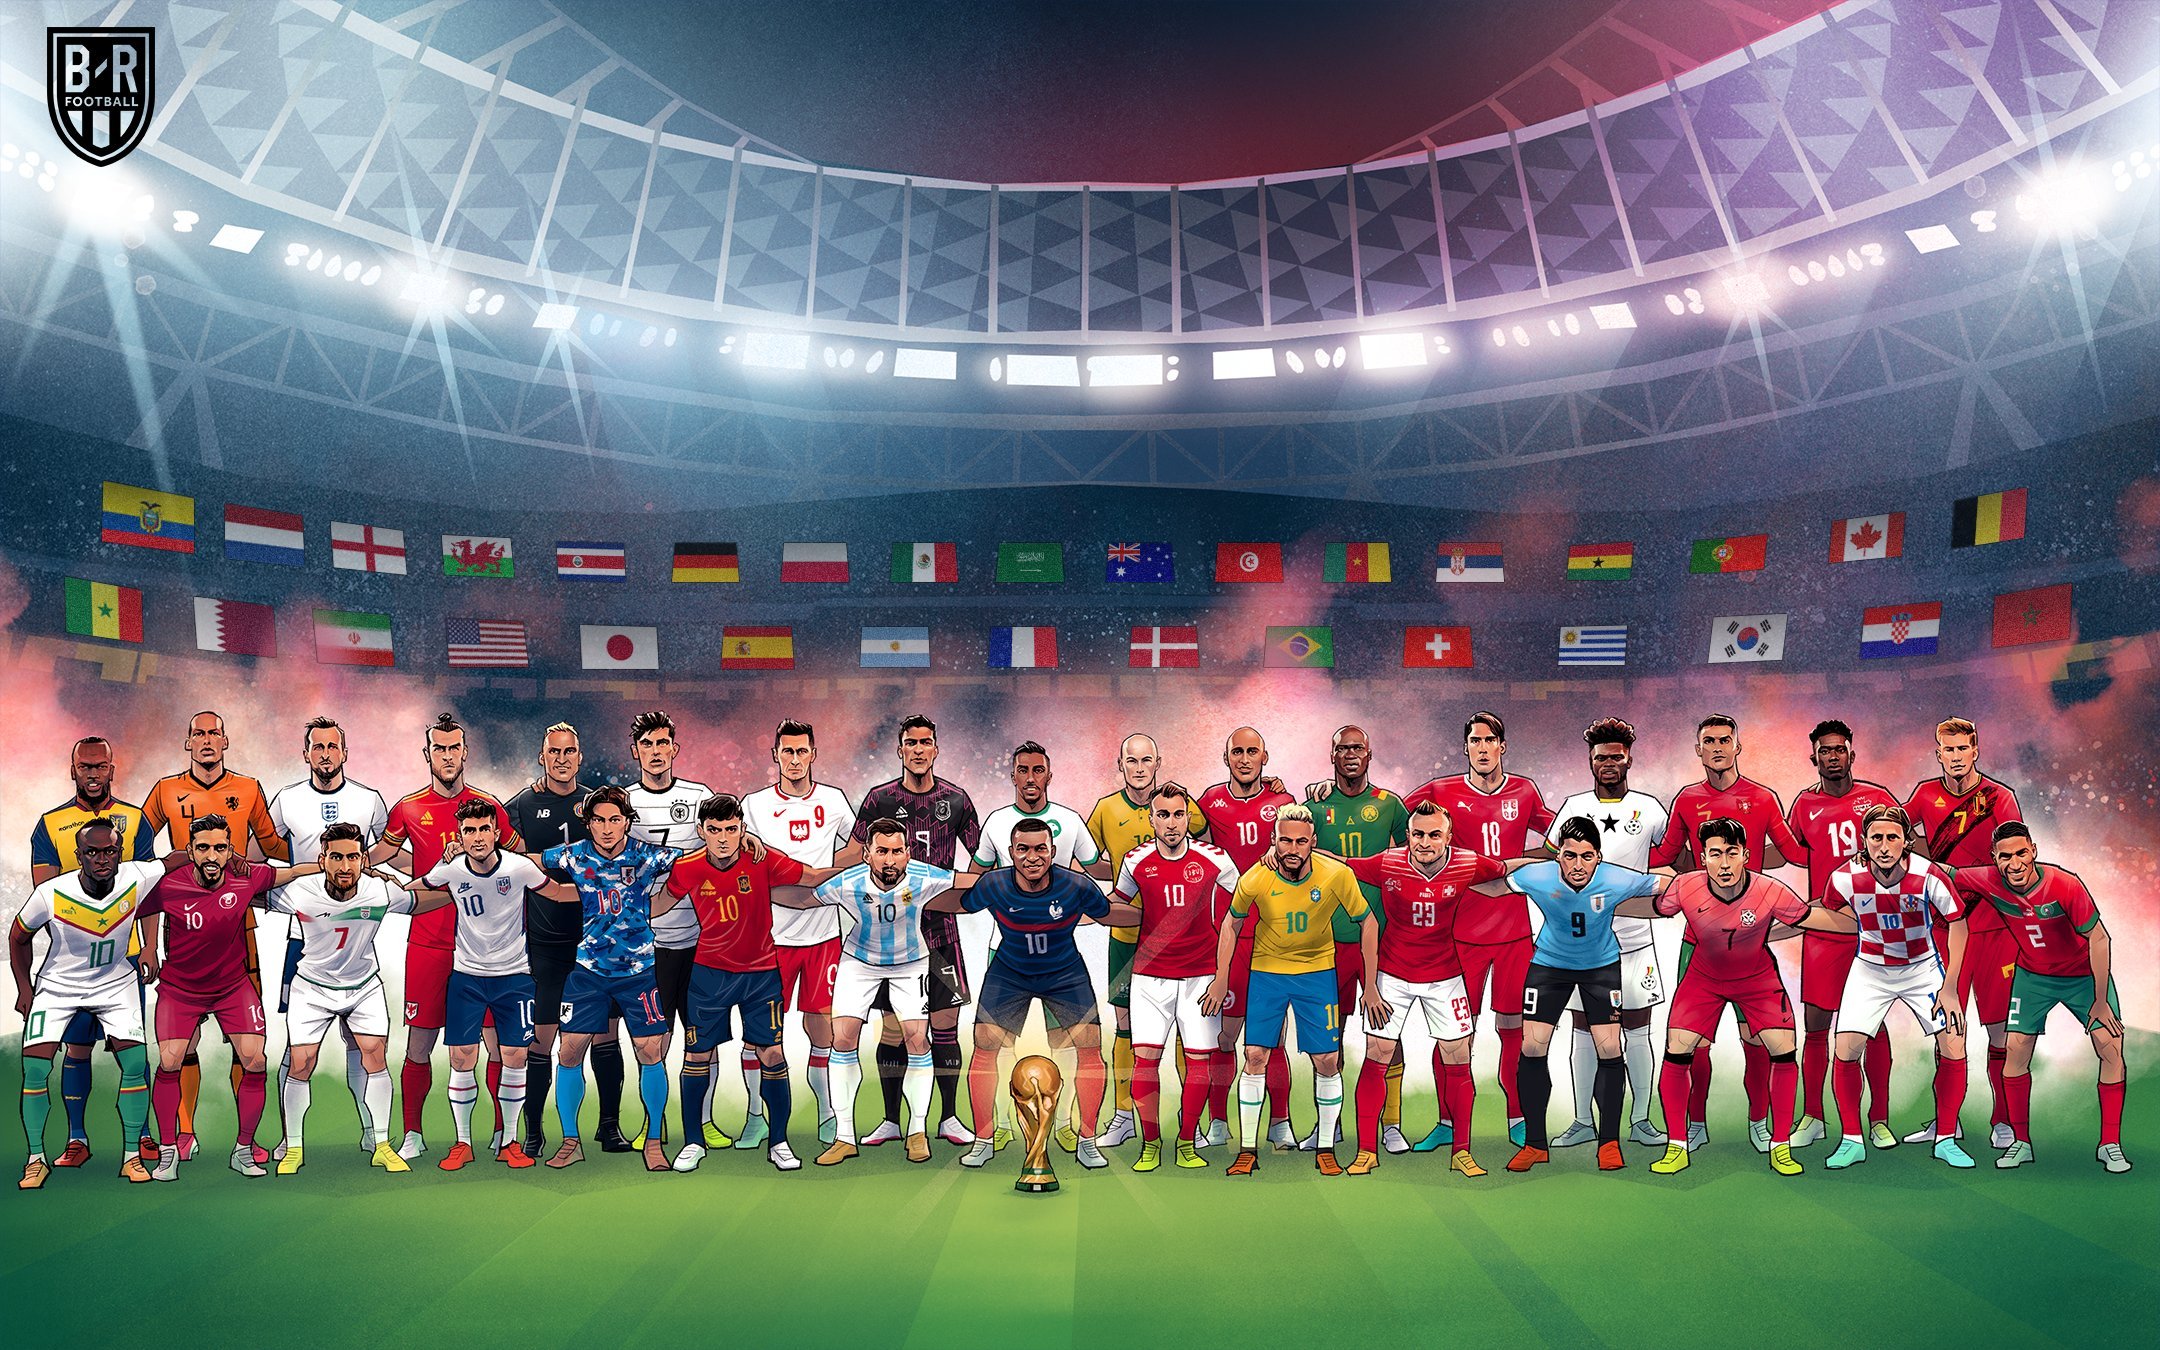 Điểm danh những đội hình đắt giá nhất tại World Cup 2022 | Bình luận - Nhận  định | Vietnam+ (VietnamPlus)